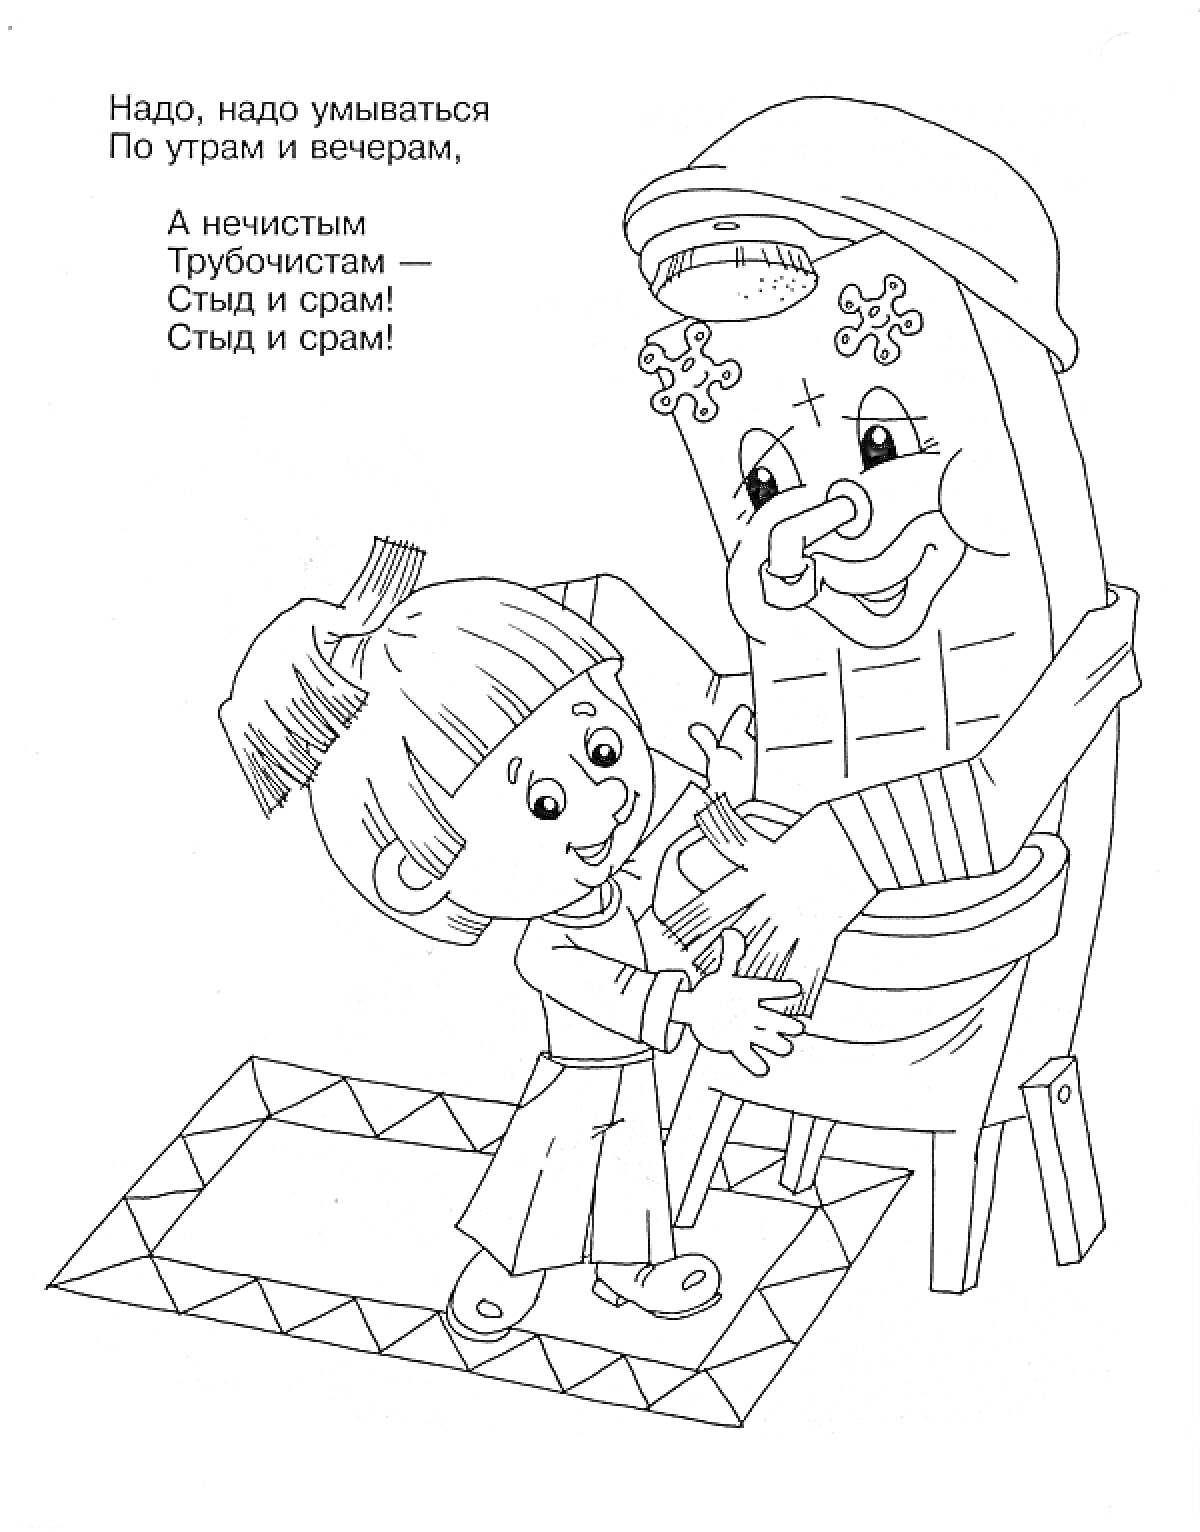 Раскраска Мальчик и Мойдодыр на коврике с кувшином в руках